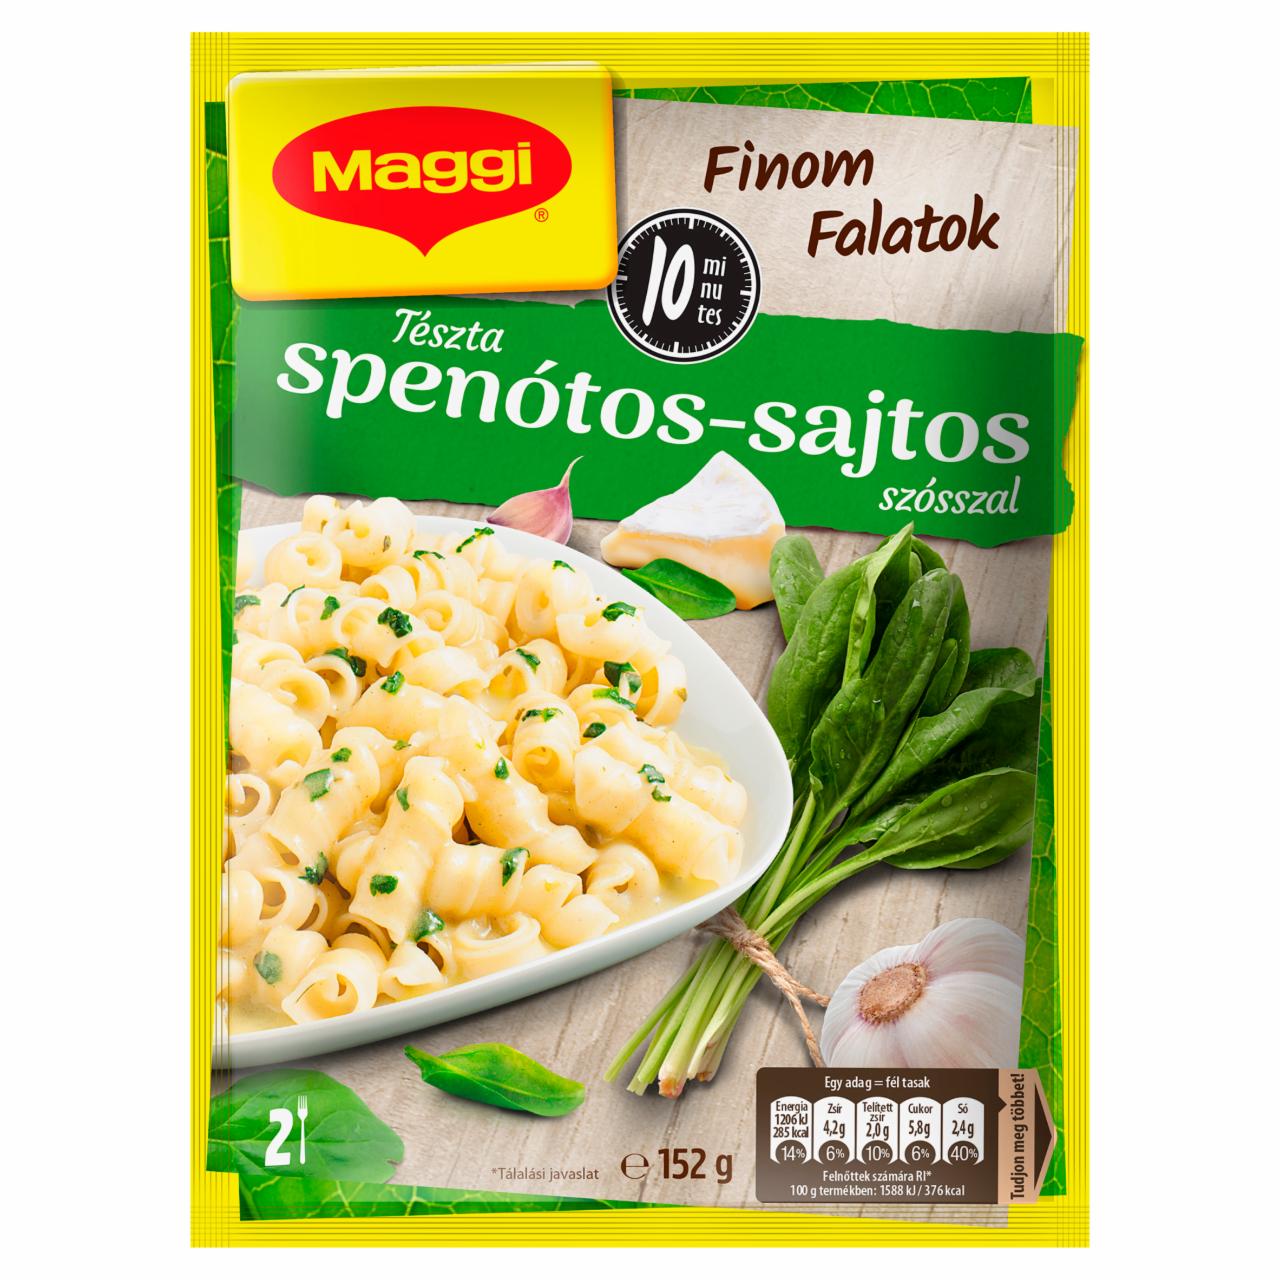 Képek - Maggi Finom Falatok tészta spenótos-sajtos szósszal 152 g